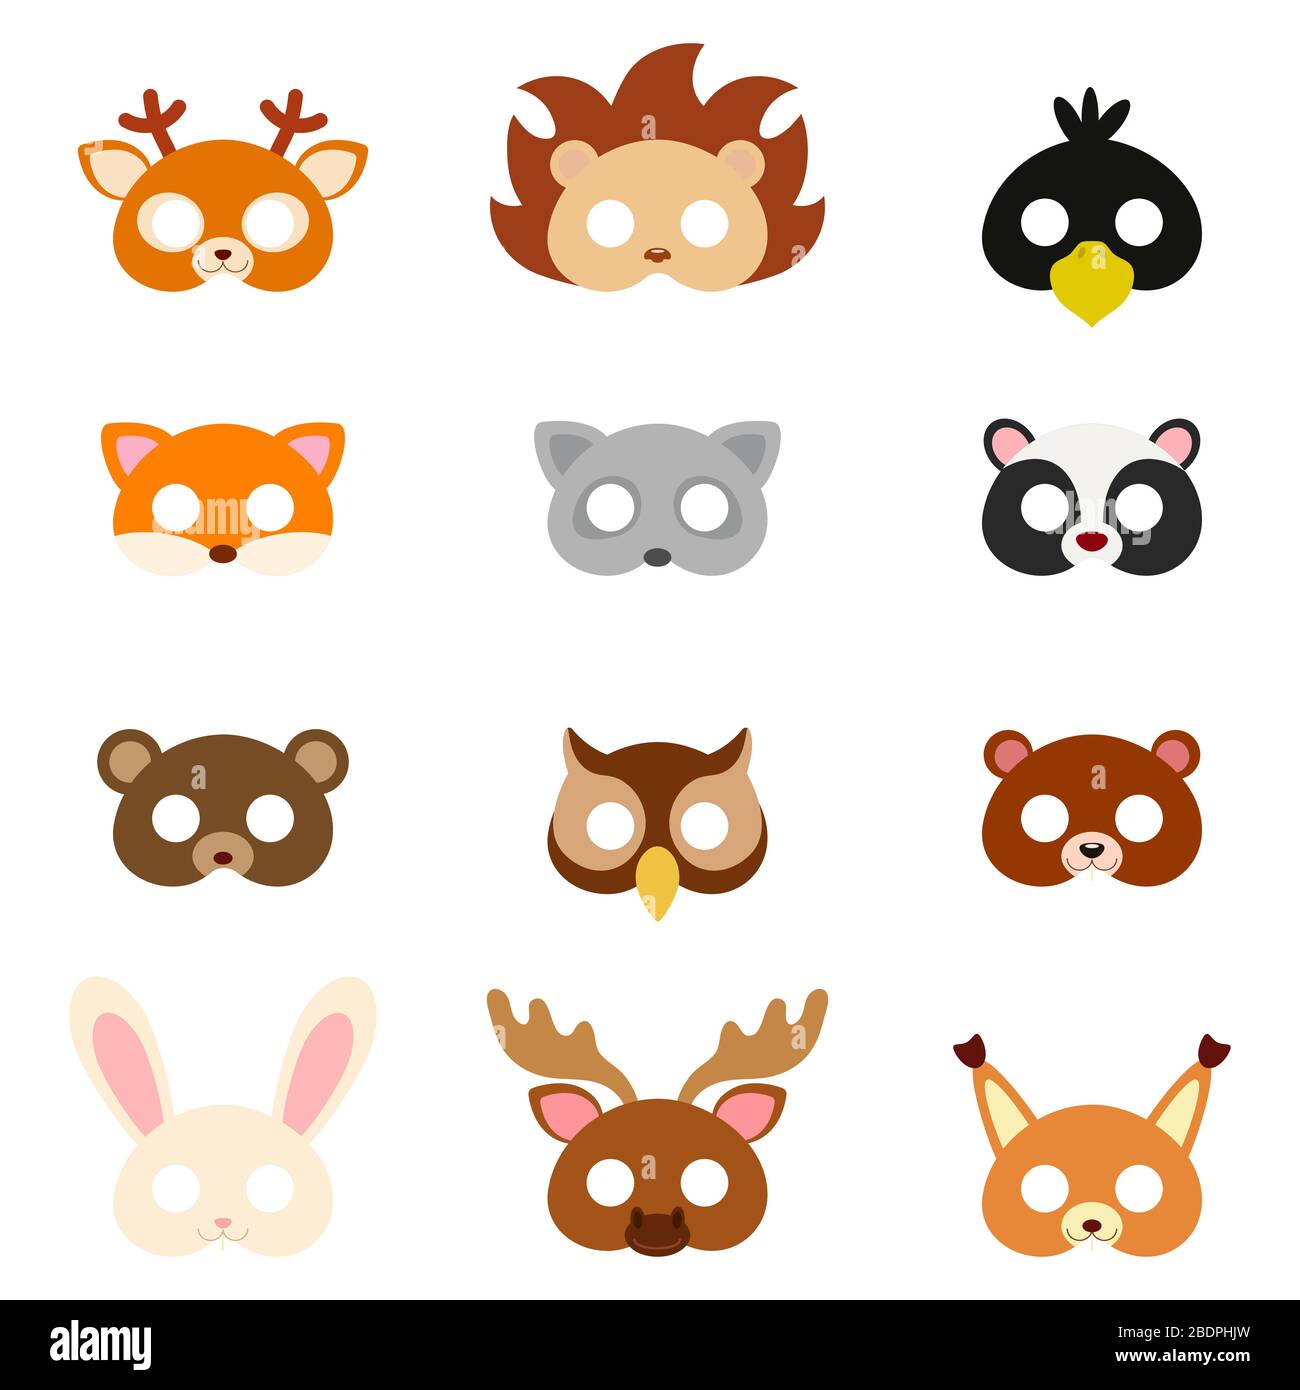 Máscaras de animales con preciosos diseños - DecoPeques